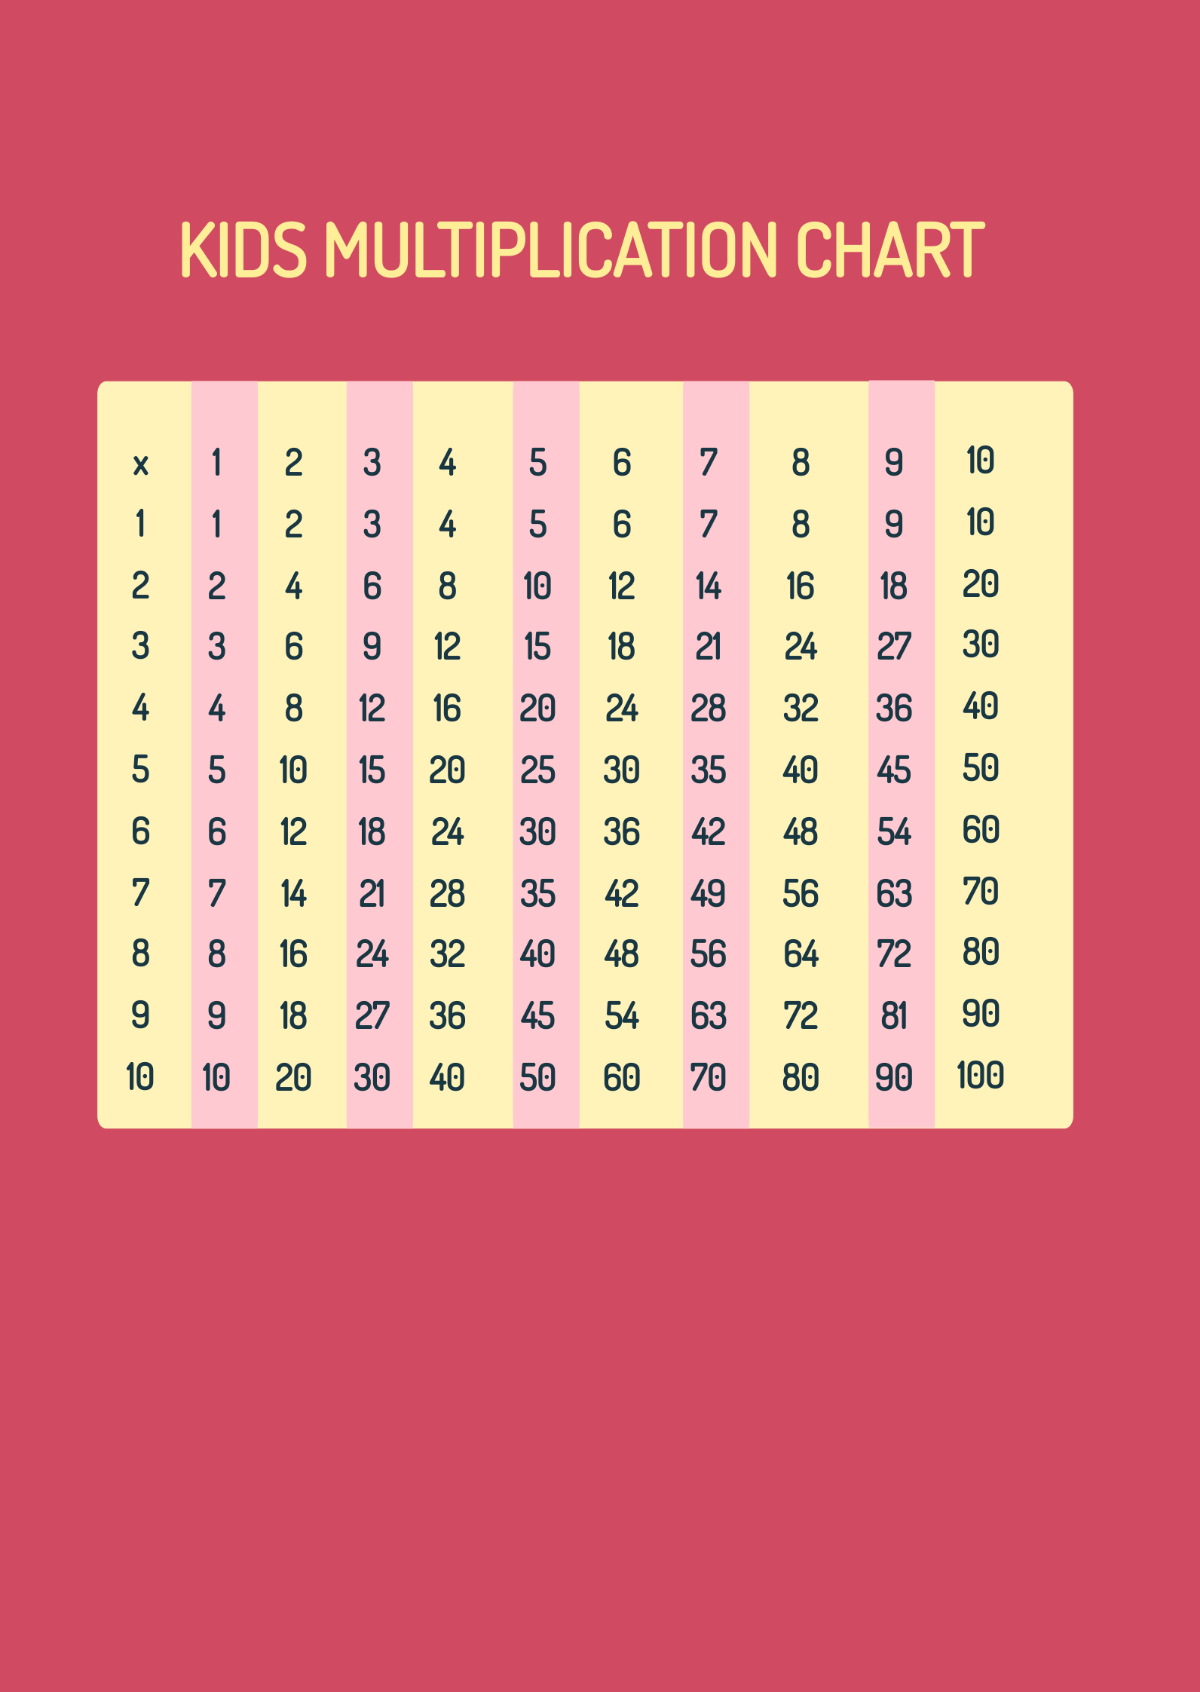 Kids Multiplication Chart Template